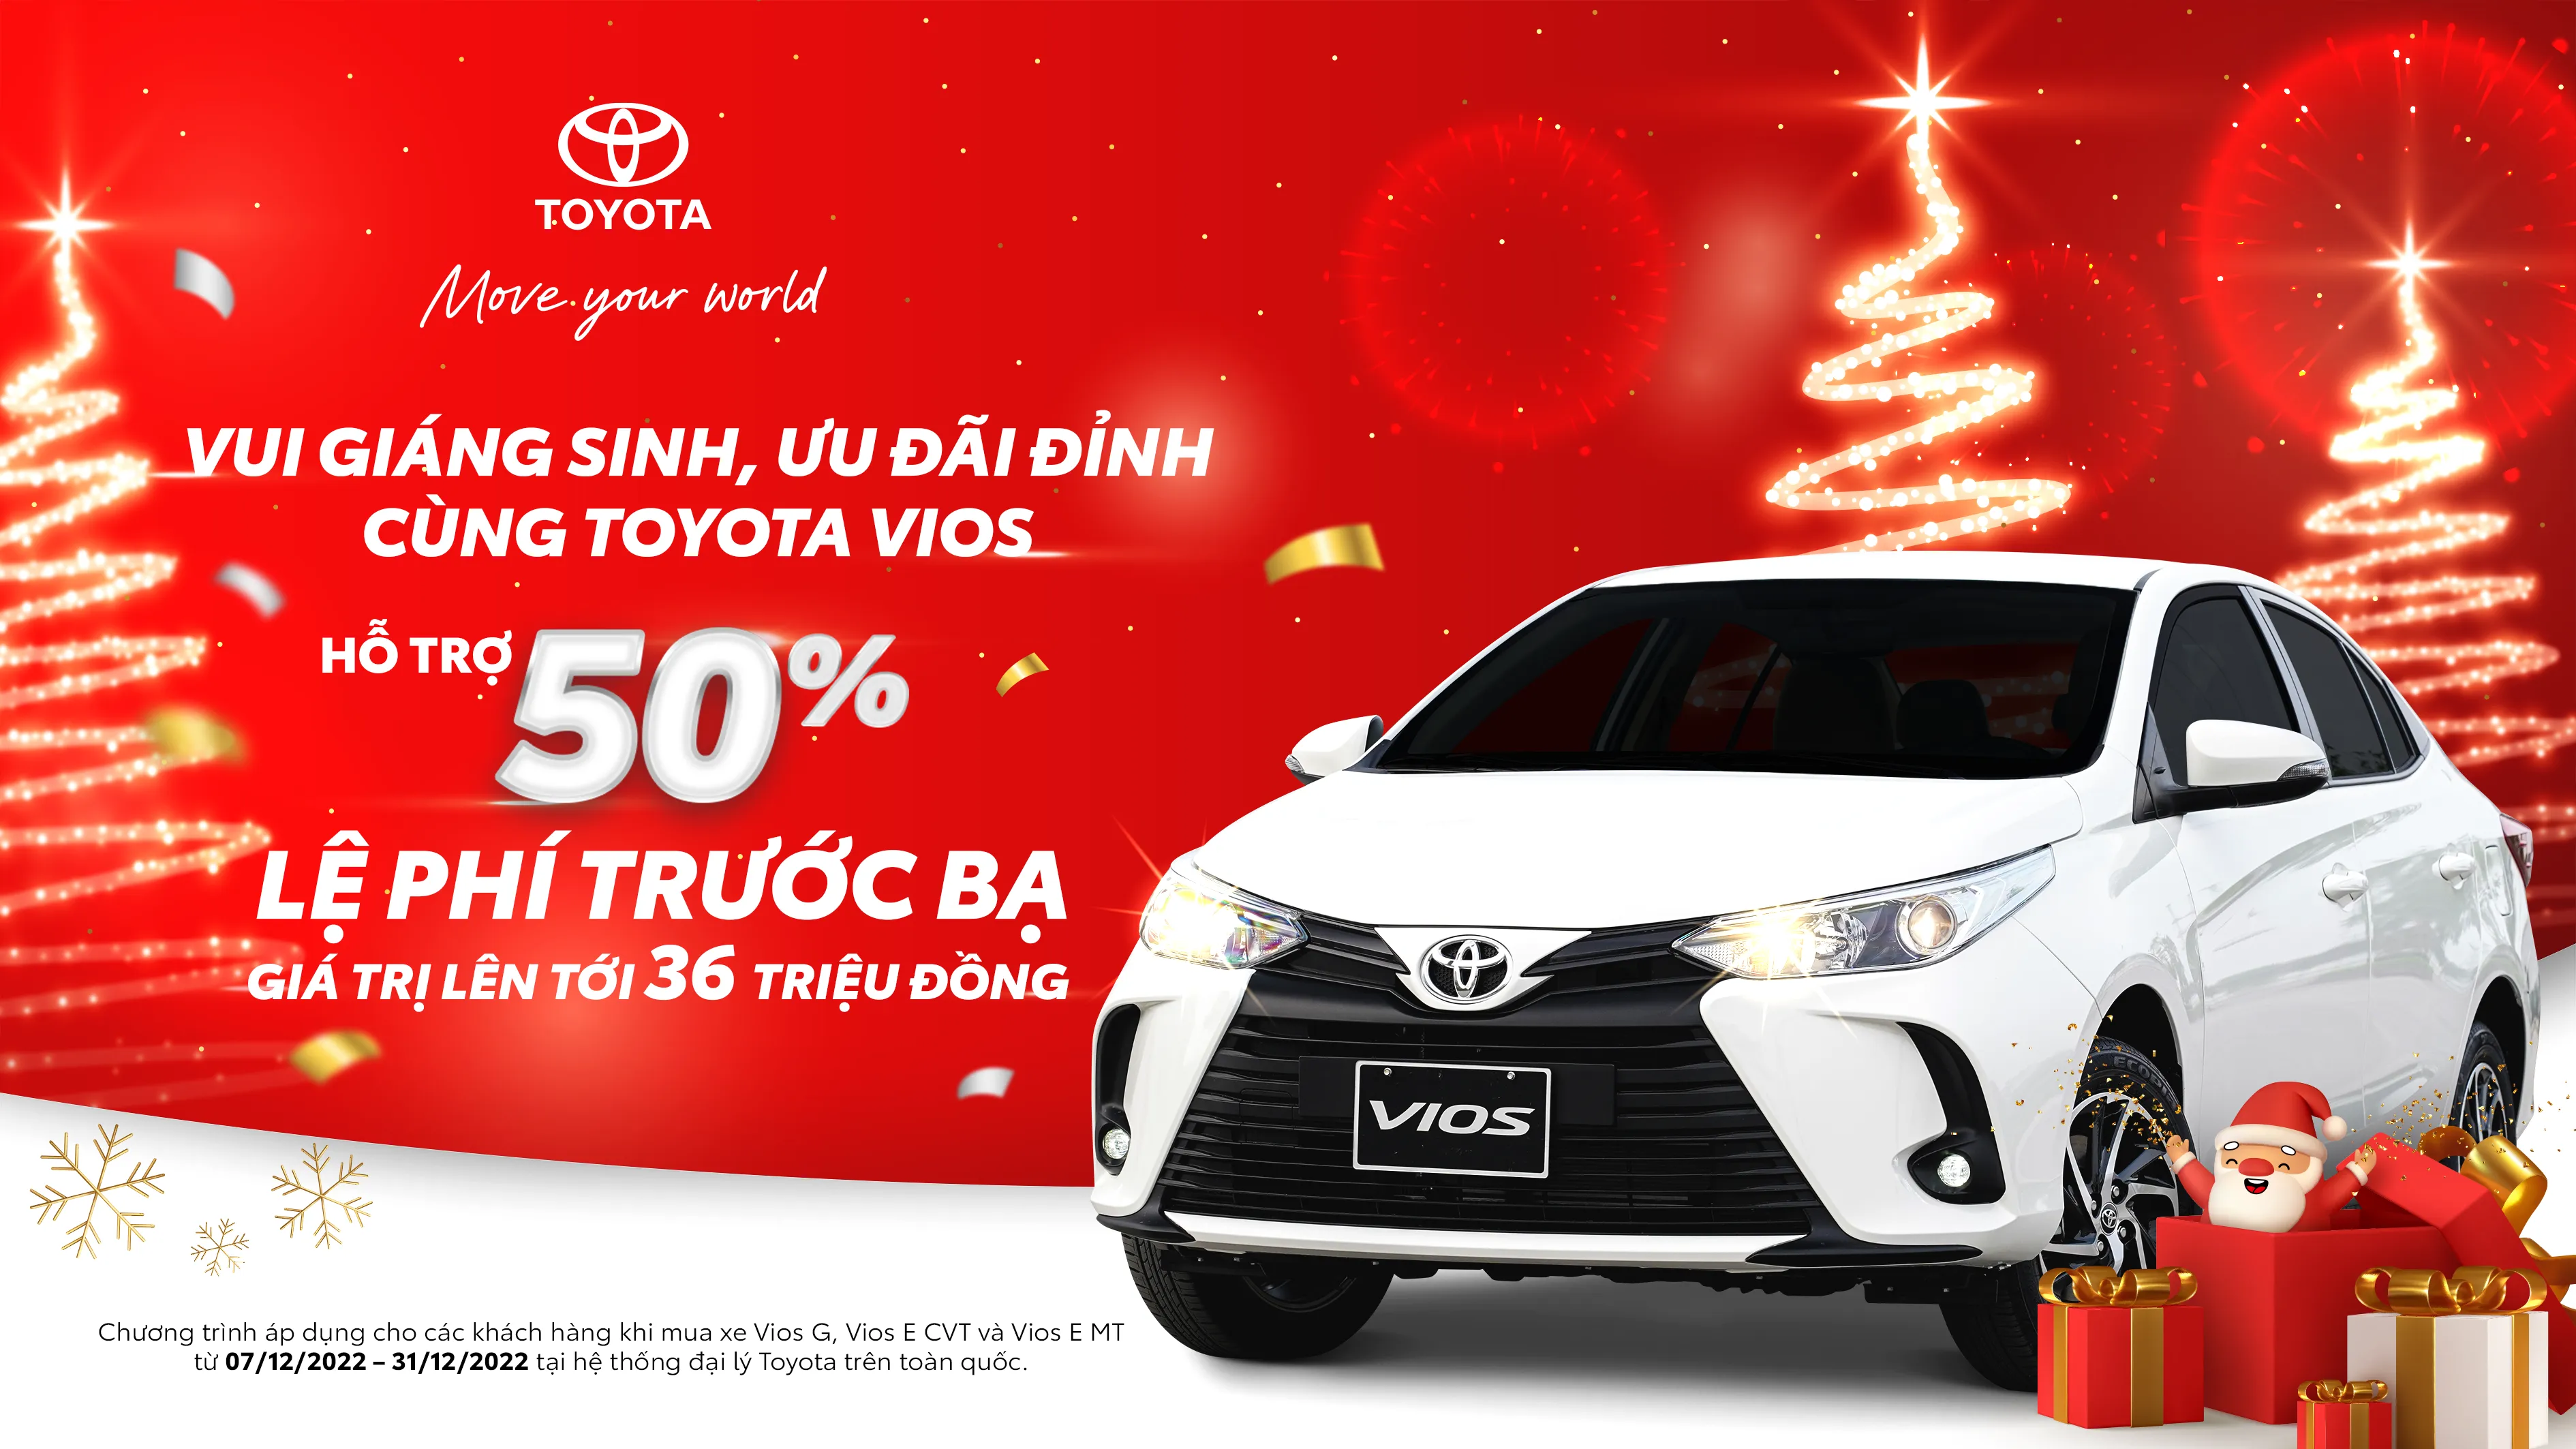 “Vui giáng sinh, ưu đãi đỉnh cùng Toyota Vios” từ hệ thống Đại lý Toyota trên toàn quốc cho khách hàng mua xe tháng 12/2022